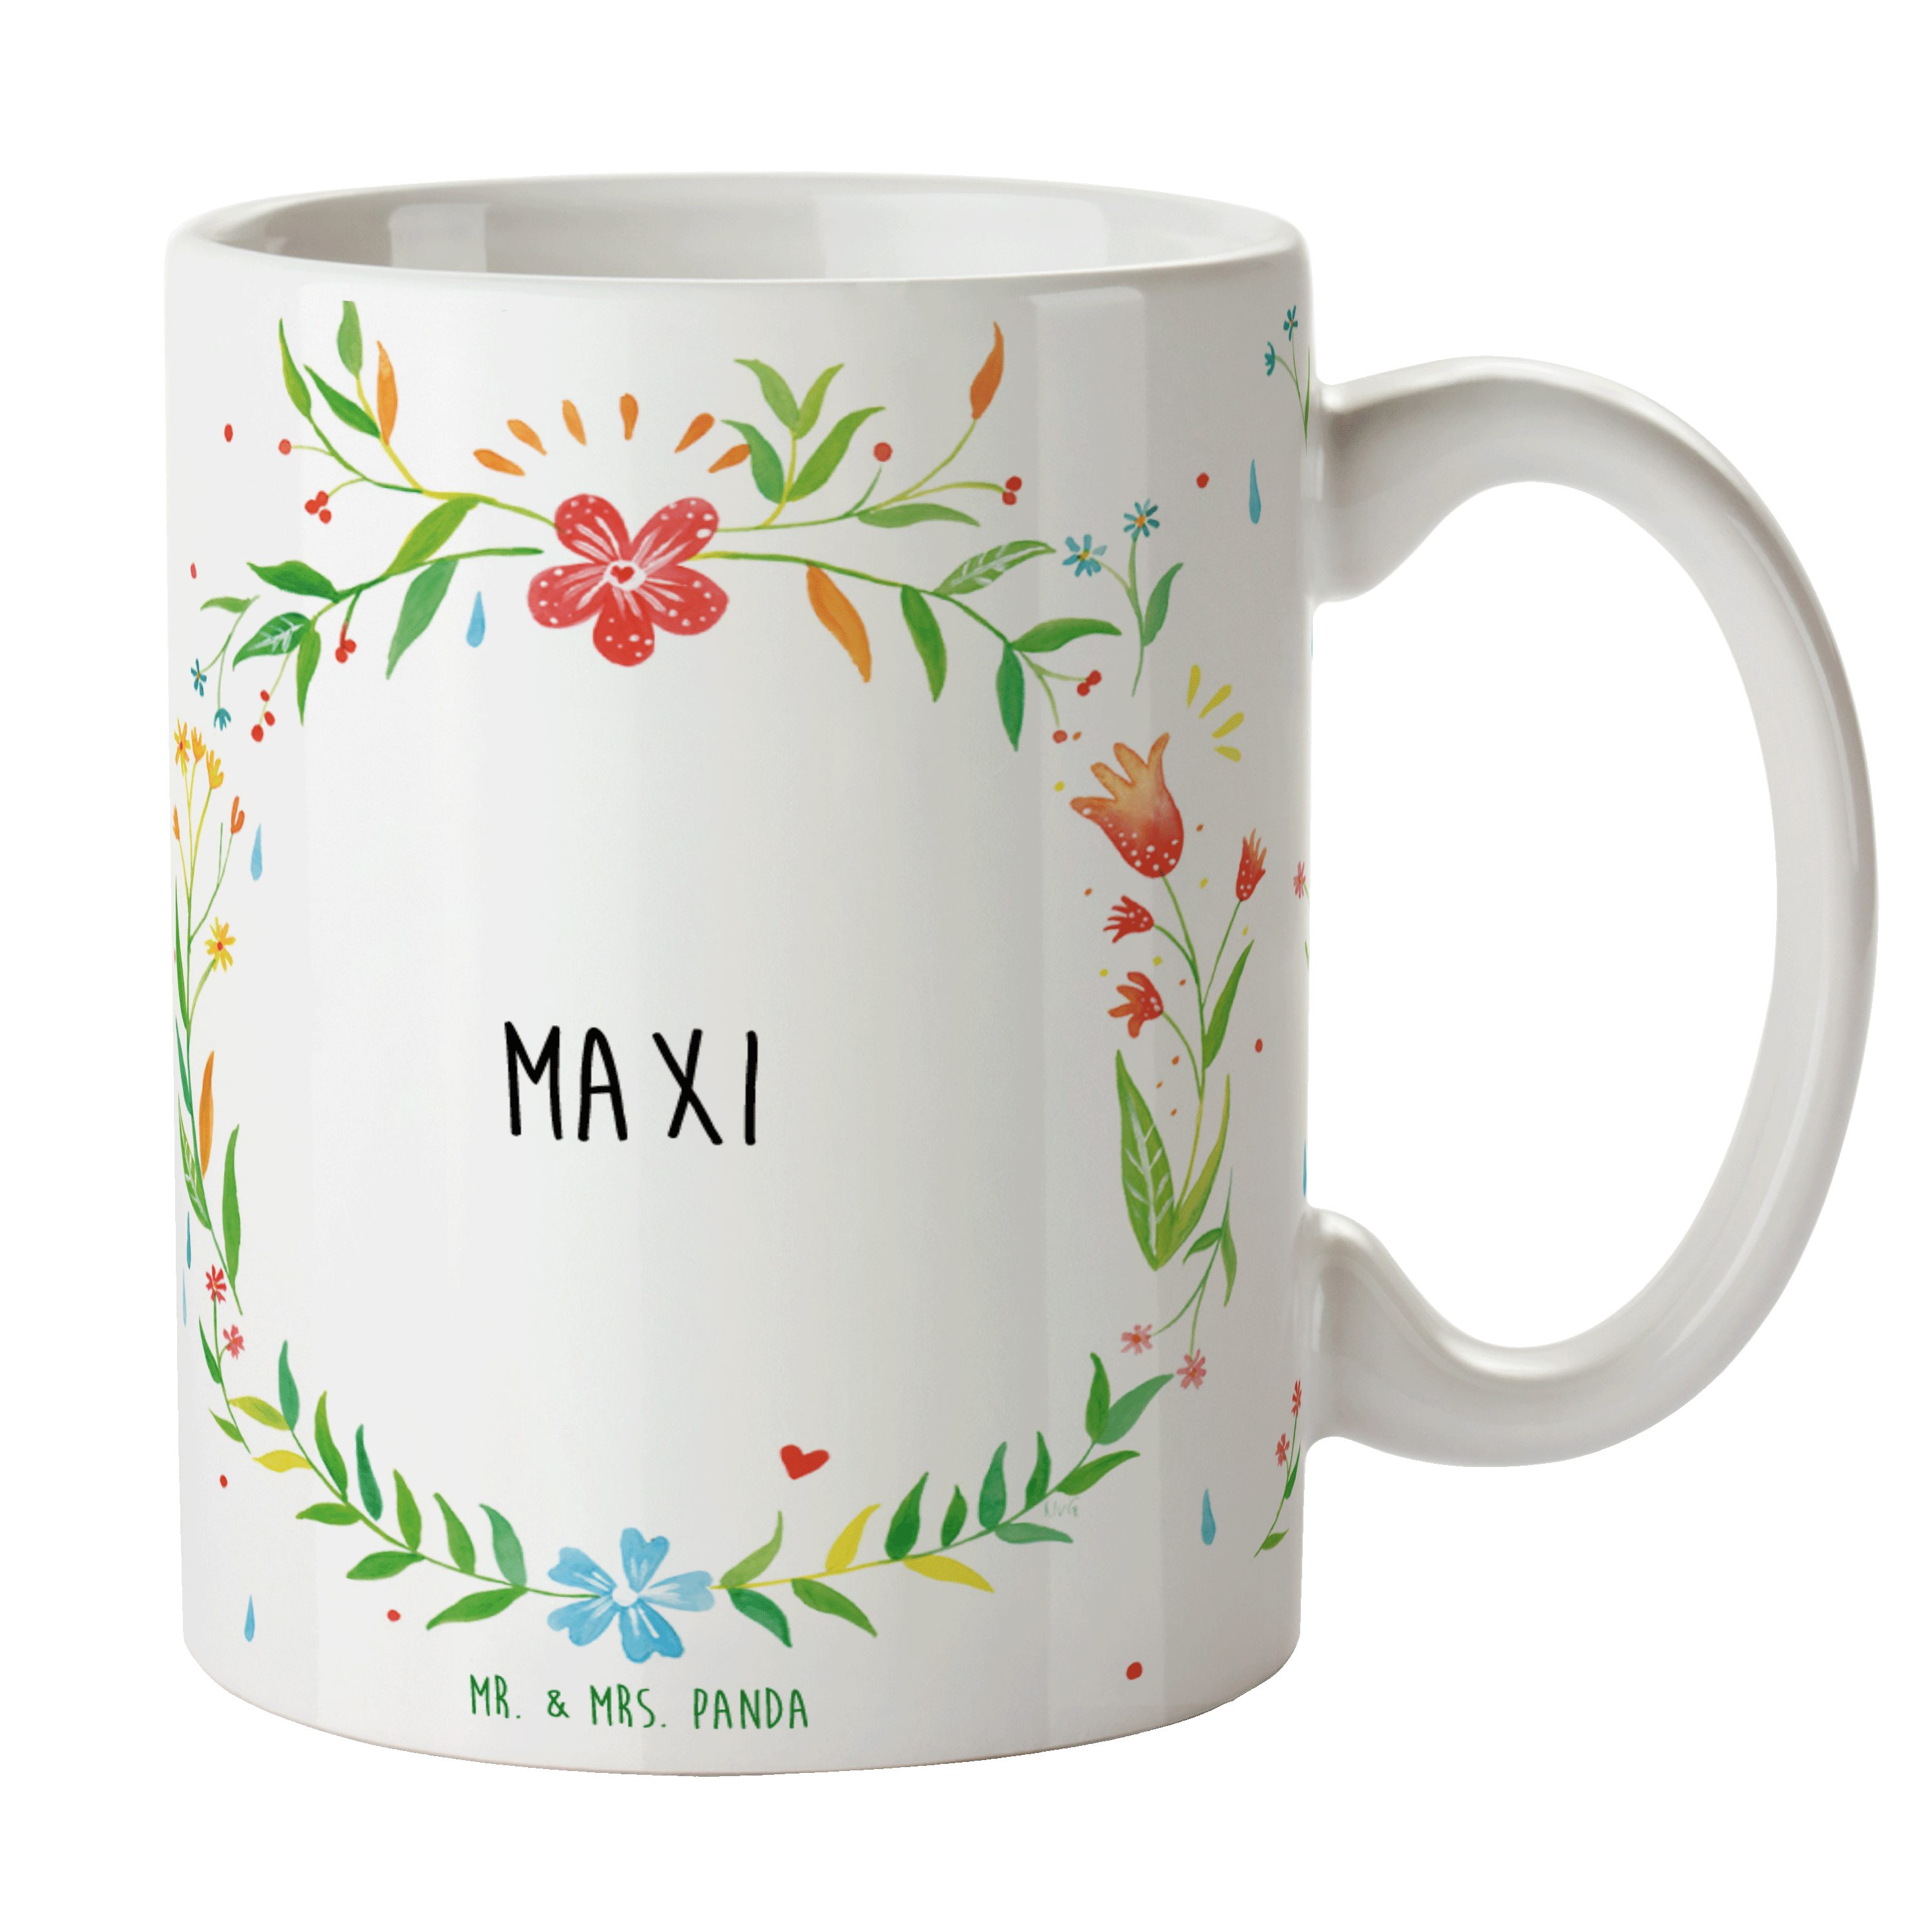 Mr. & Mrs. Panda Tasse Maxi - Geschenk, Kaffeebecher, Kaffeetasse, Porzellantasse, Teebecher, Keramik